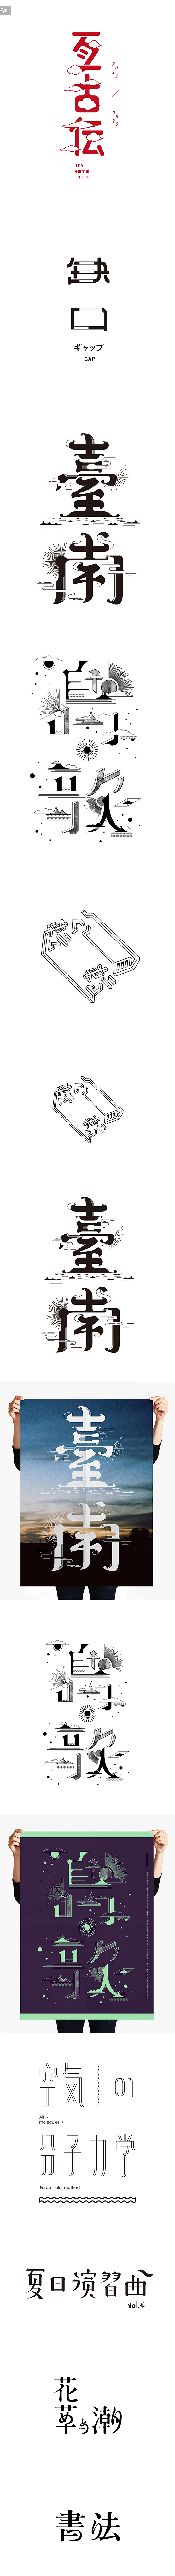 台湾字体设计师中文字体创意设计传统元素风...